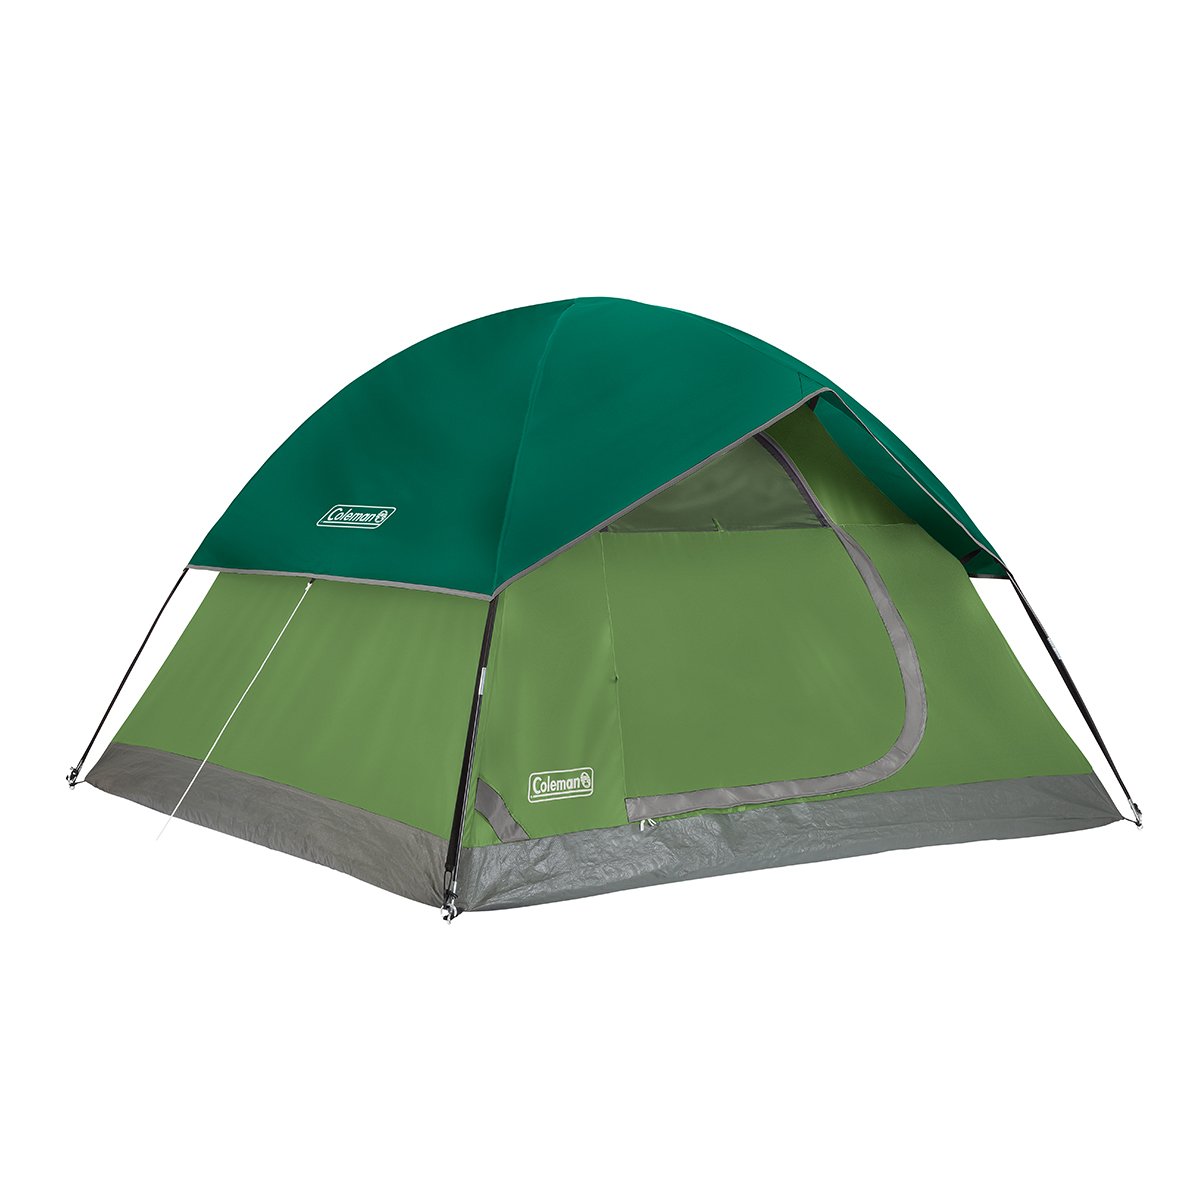 Ruïneren repetitie oneerlijk Sundome® 4-Person Camping Tent | Coleman